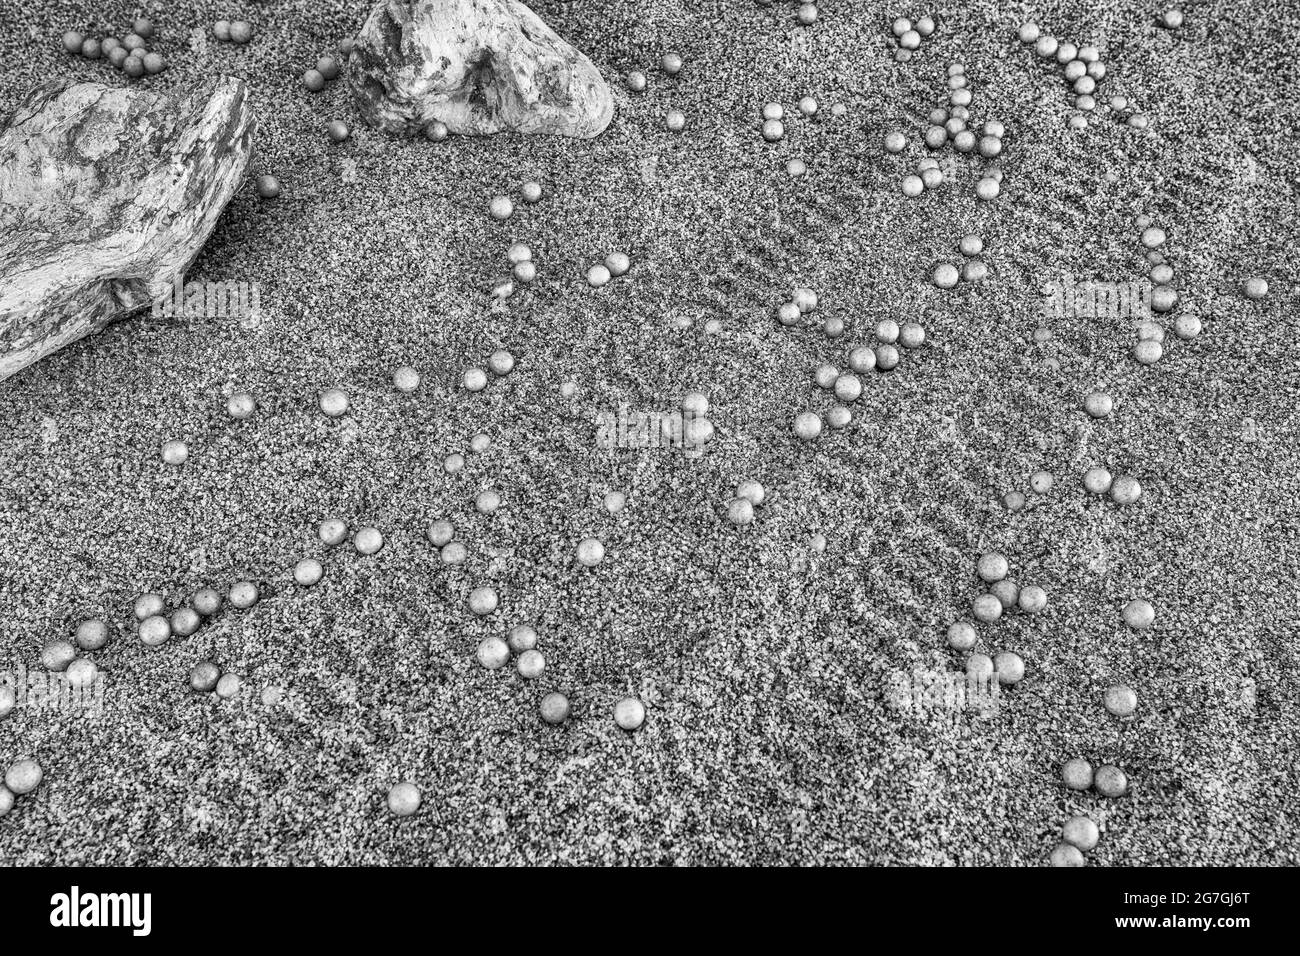 Presentación en blanco y negro de la búsqueda de la lengua en la mejilla para la vida en Marte y los arándanos de la NASA (a veces llamados hongos marcianos). No hace falta decir que NO Marte. Foto de stock